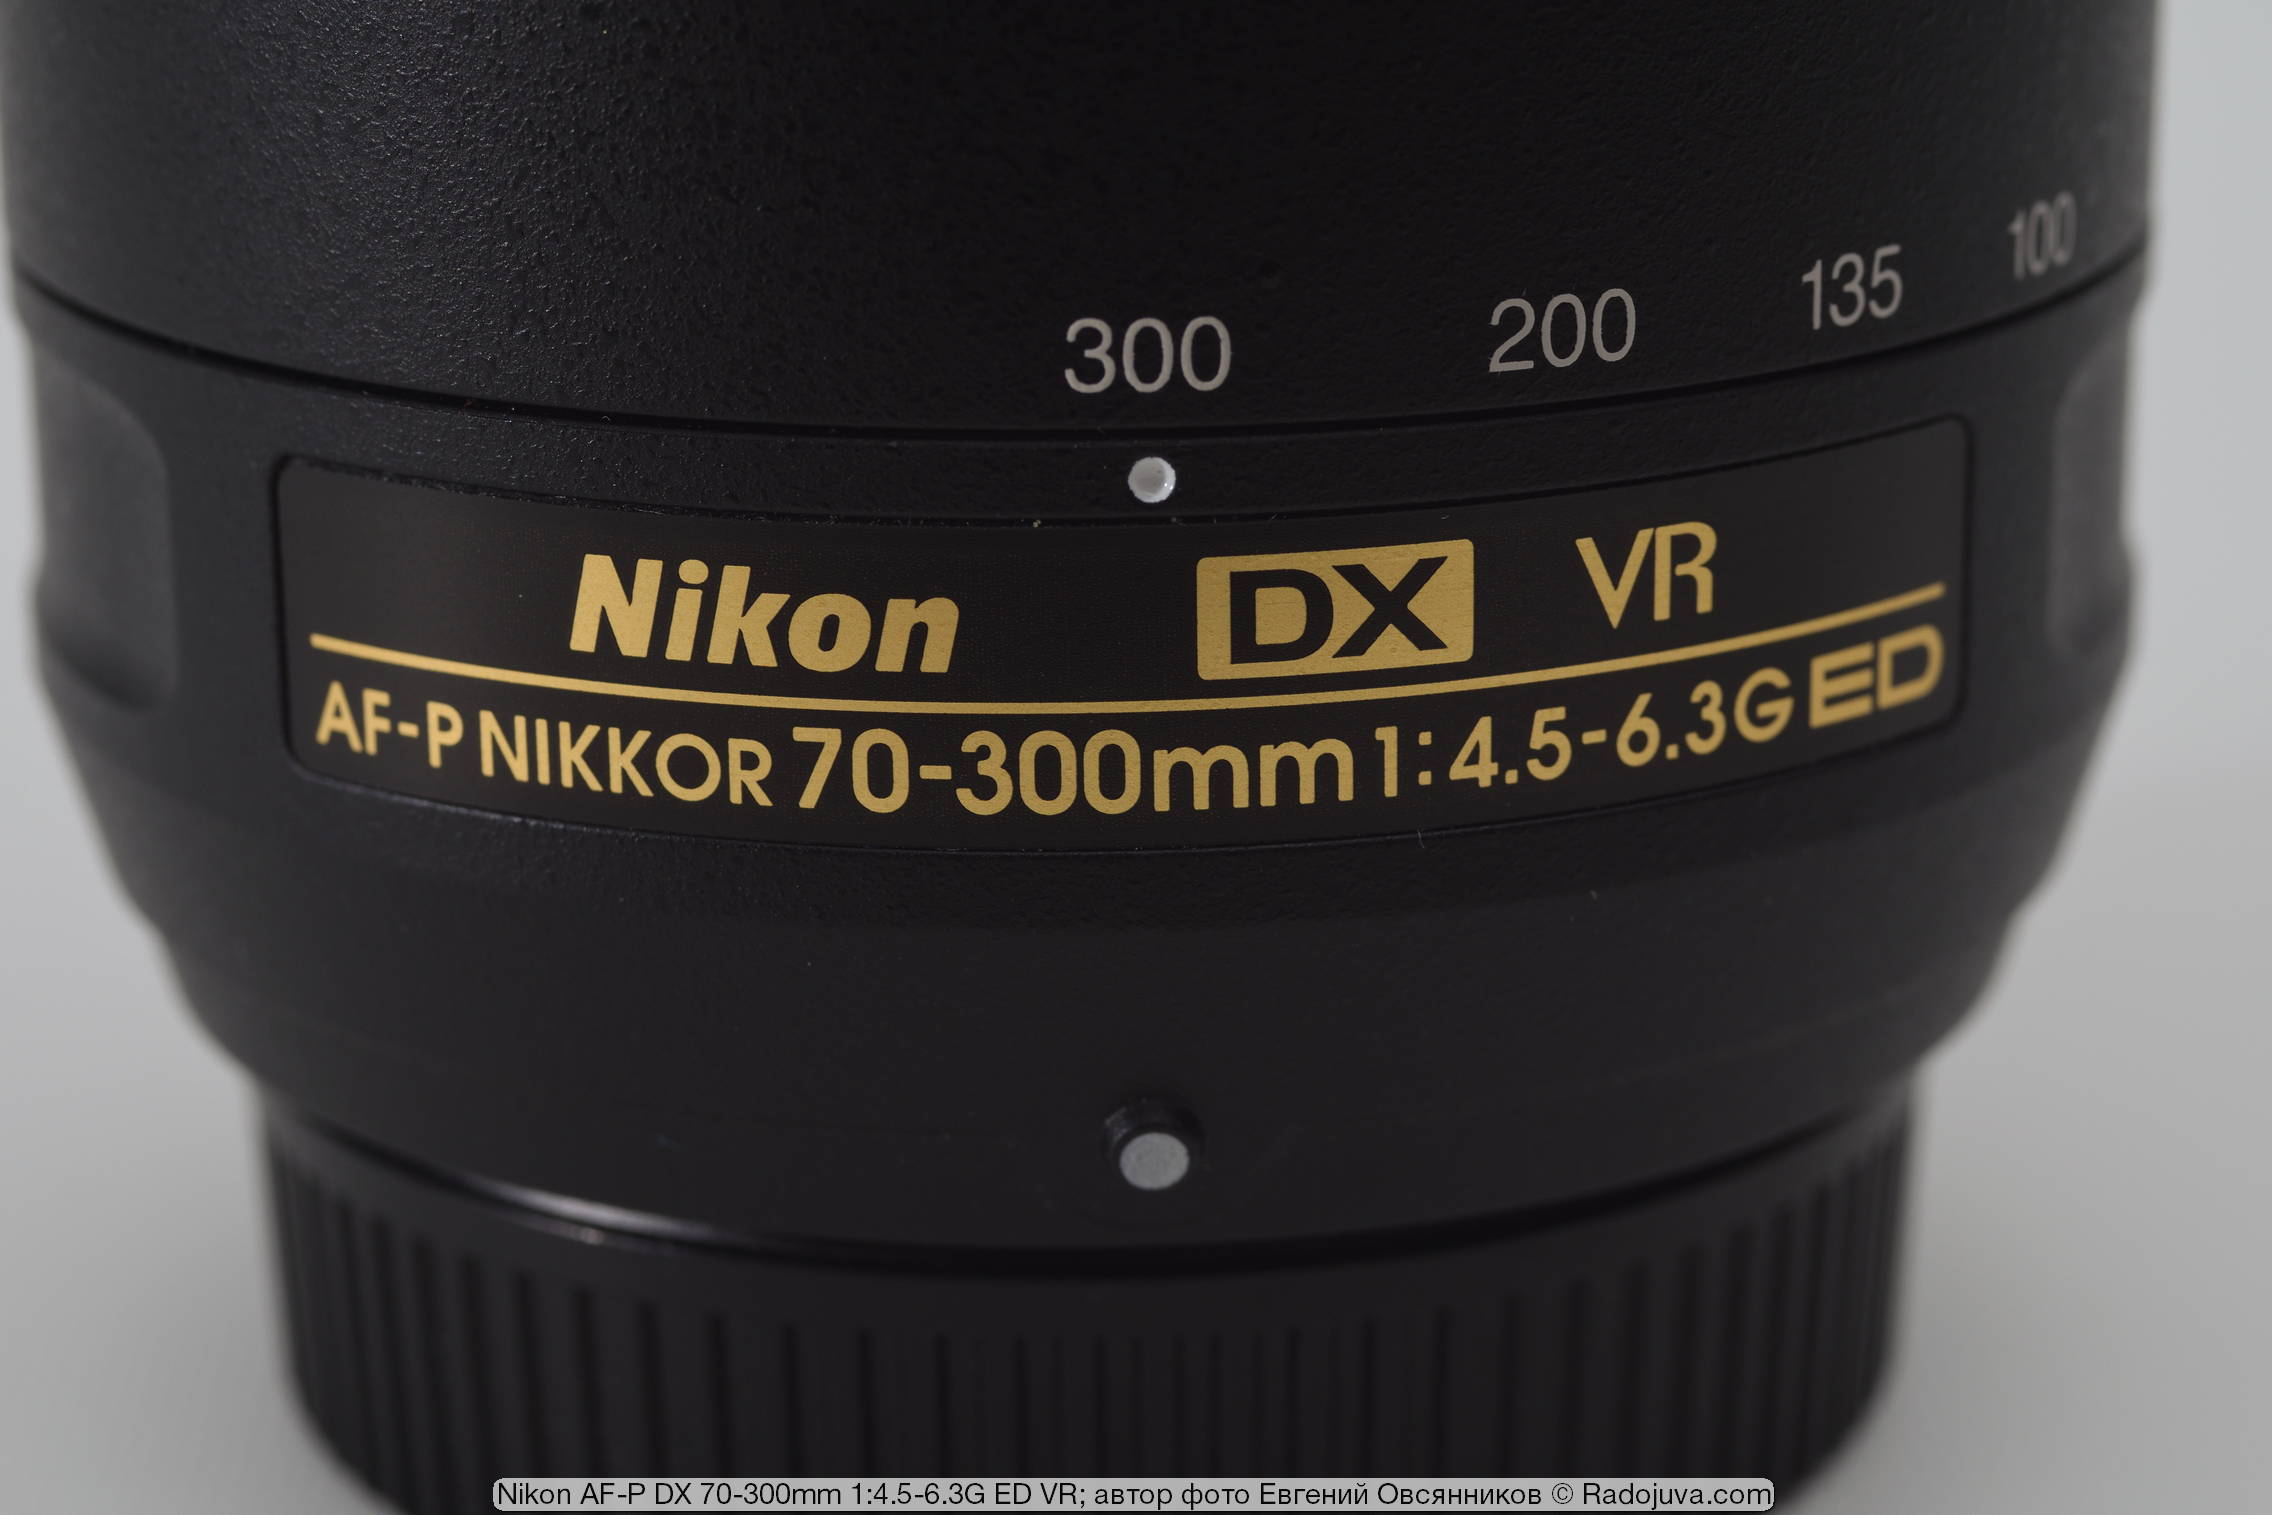 Nikon AF-P DX Nikkor 70-300mm 1:4.5-6.3G ED VR. Обзор от читателя Радоживы  | Радожива